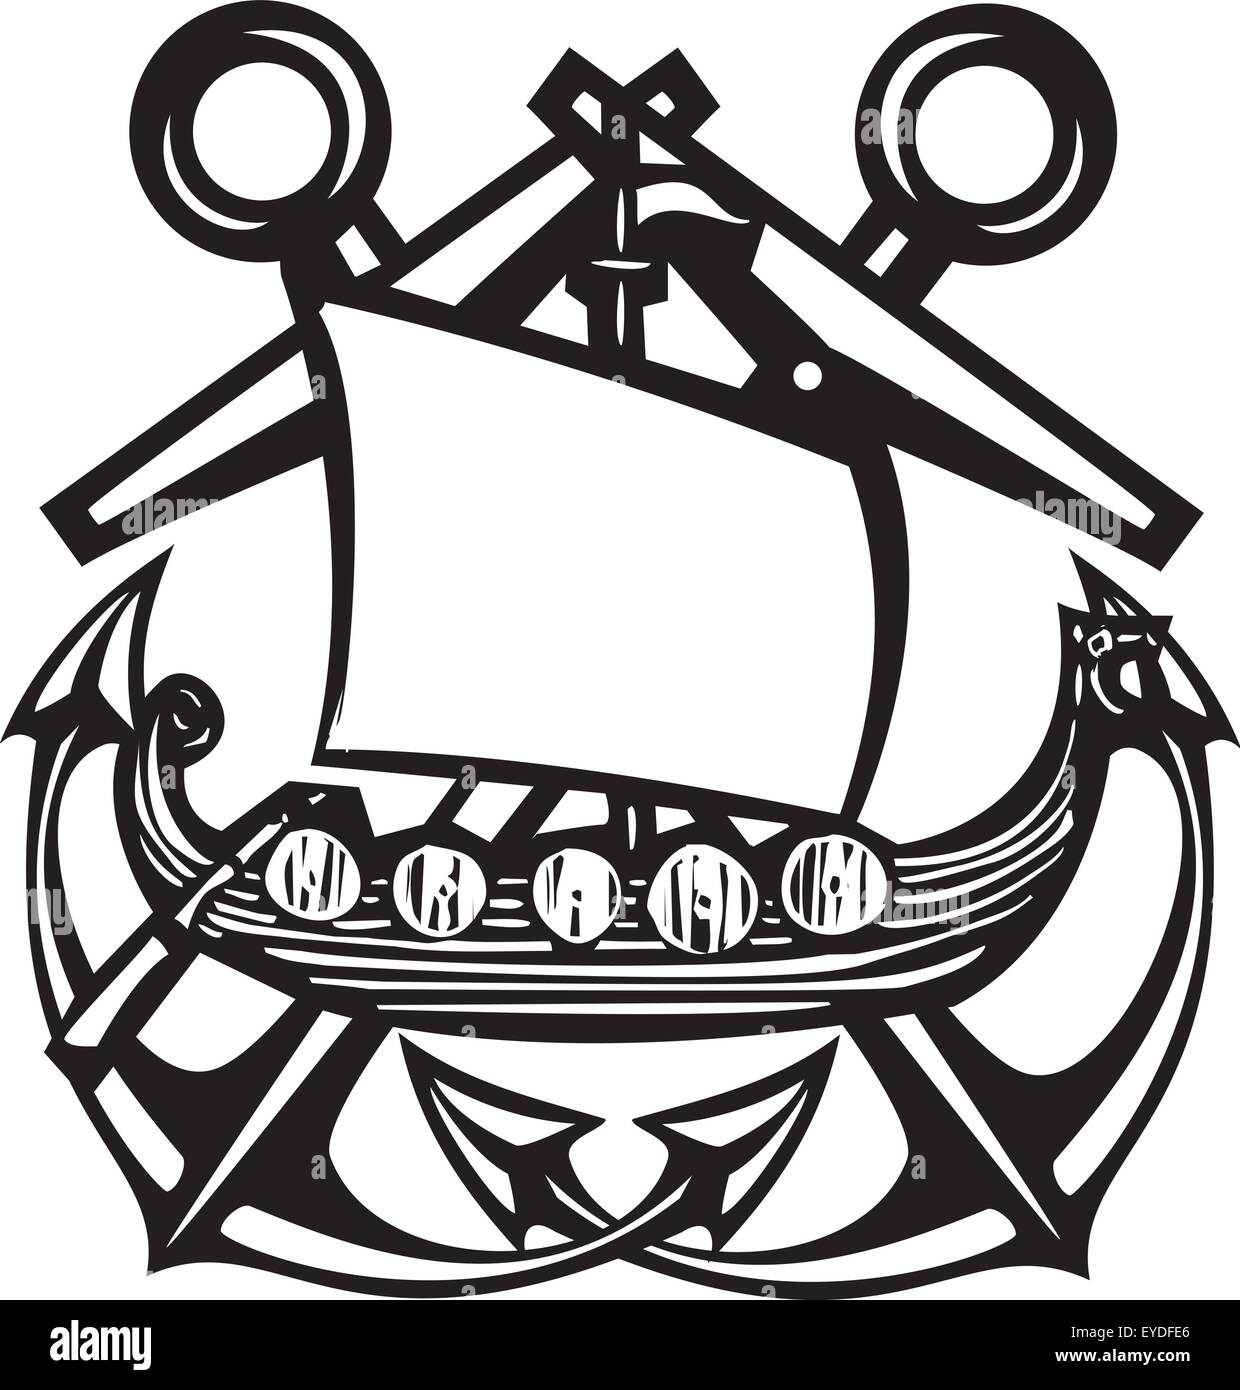 Gravure sur bois croisés avec ancres flottantes style viking ship Illustration de Vecteur